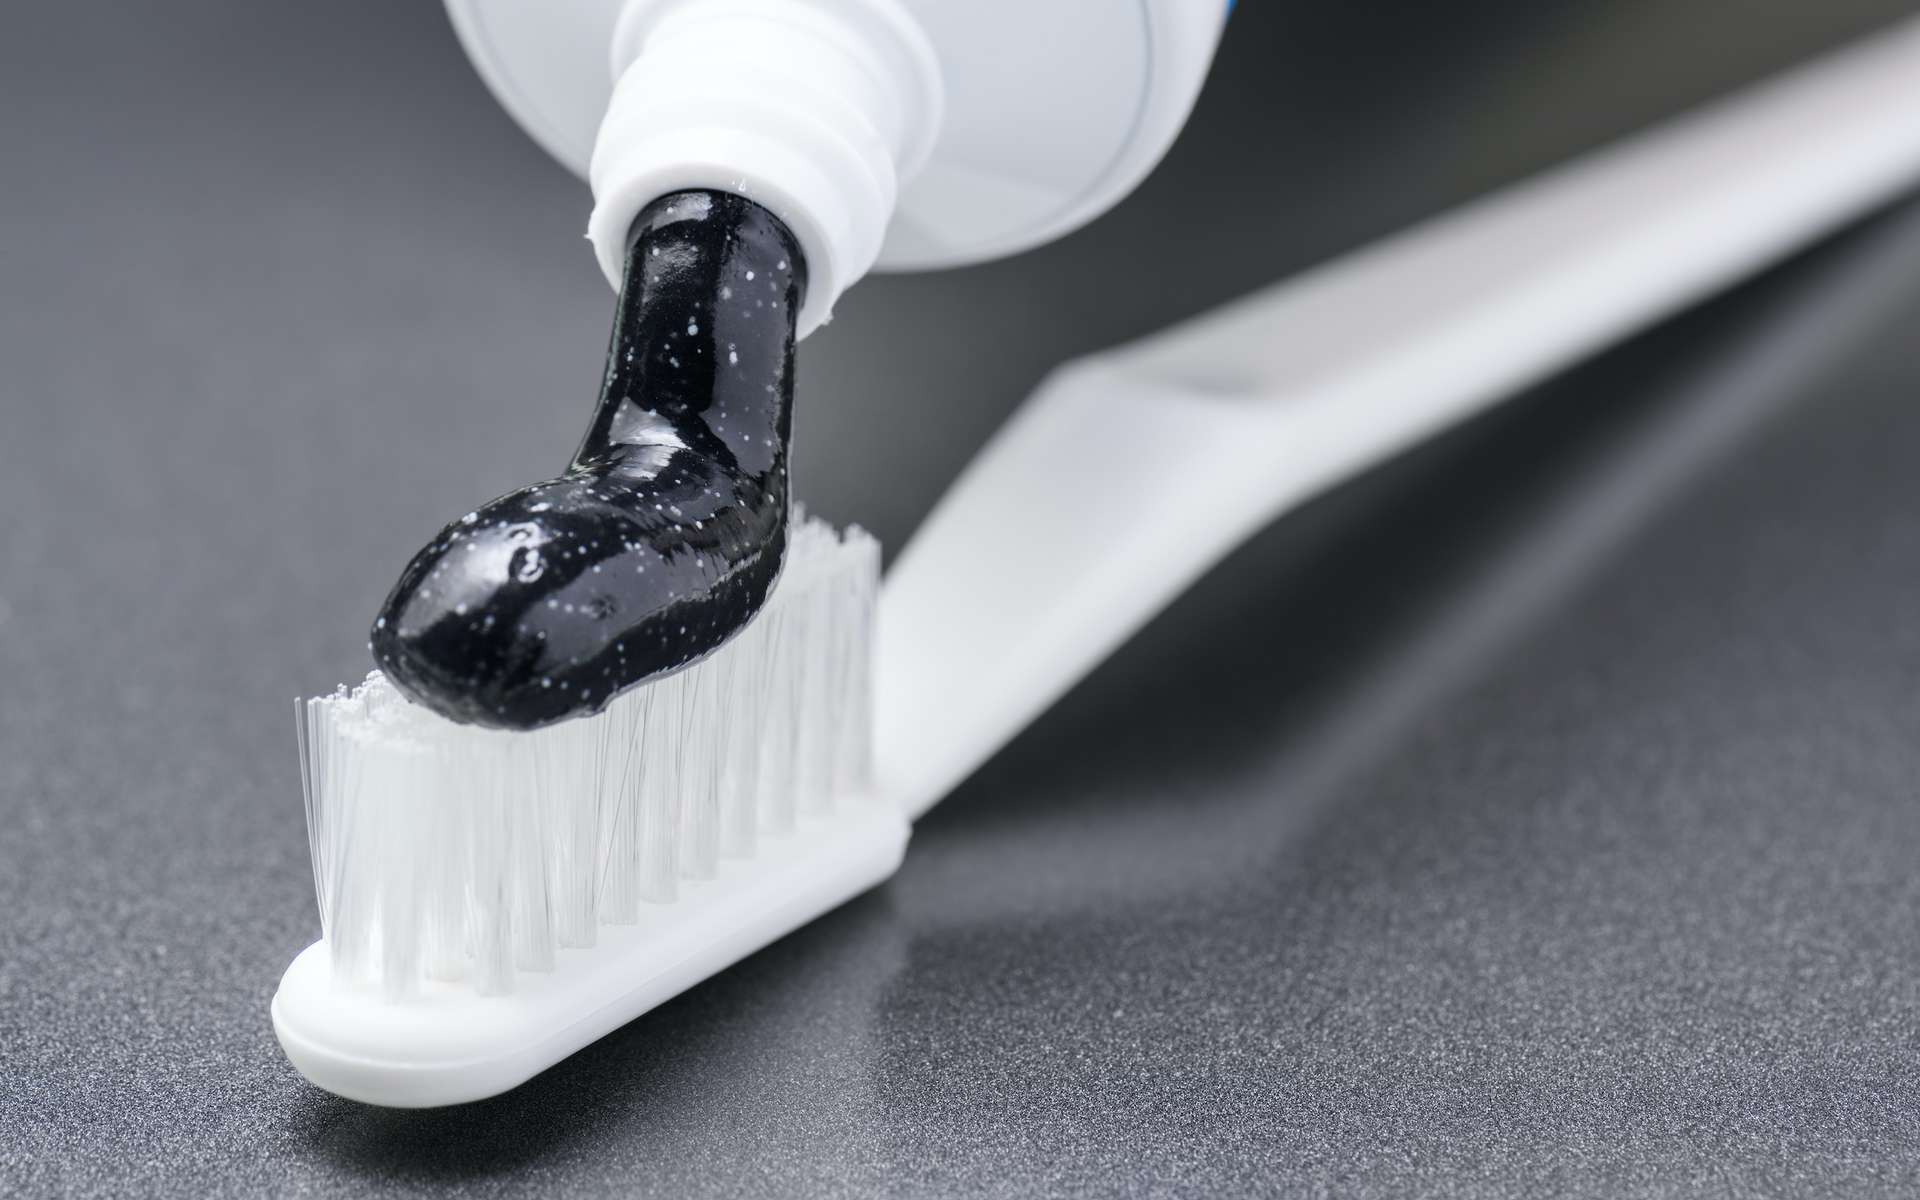 Le dentifrice au charbon est-il efficace pour blanchir les dents ?